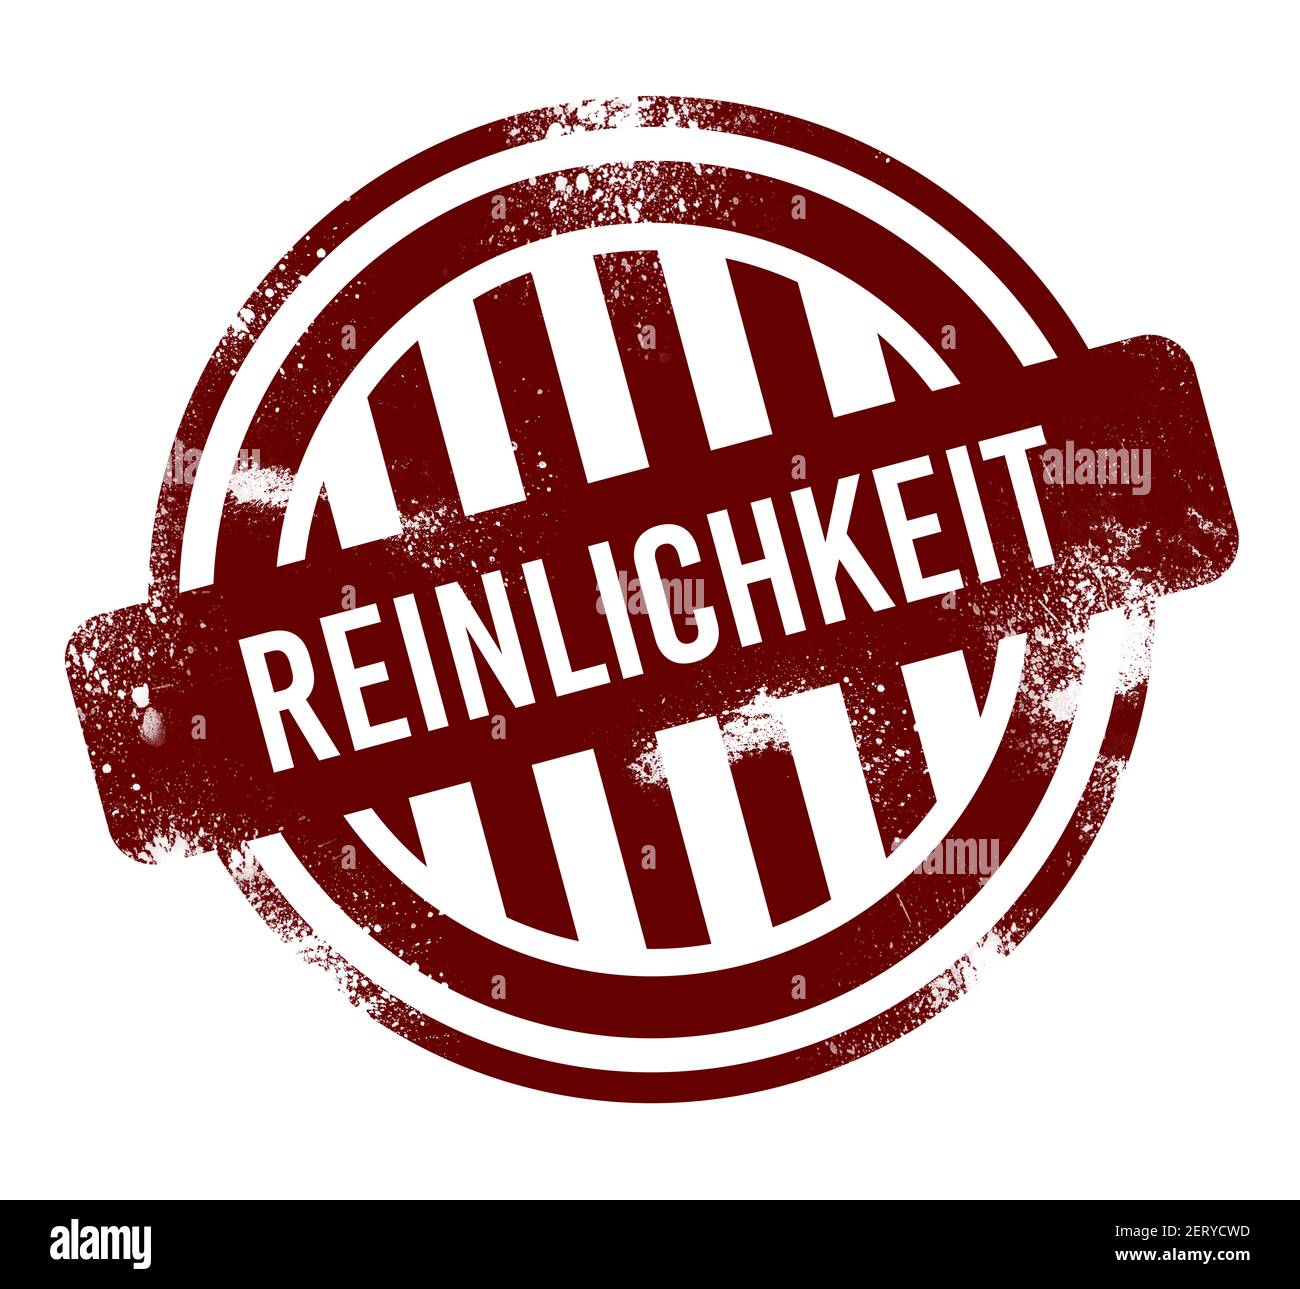 reinlickkeit - bouton rond rouge de grunge, timbre Banque D'Images